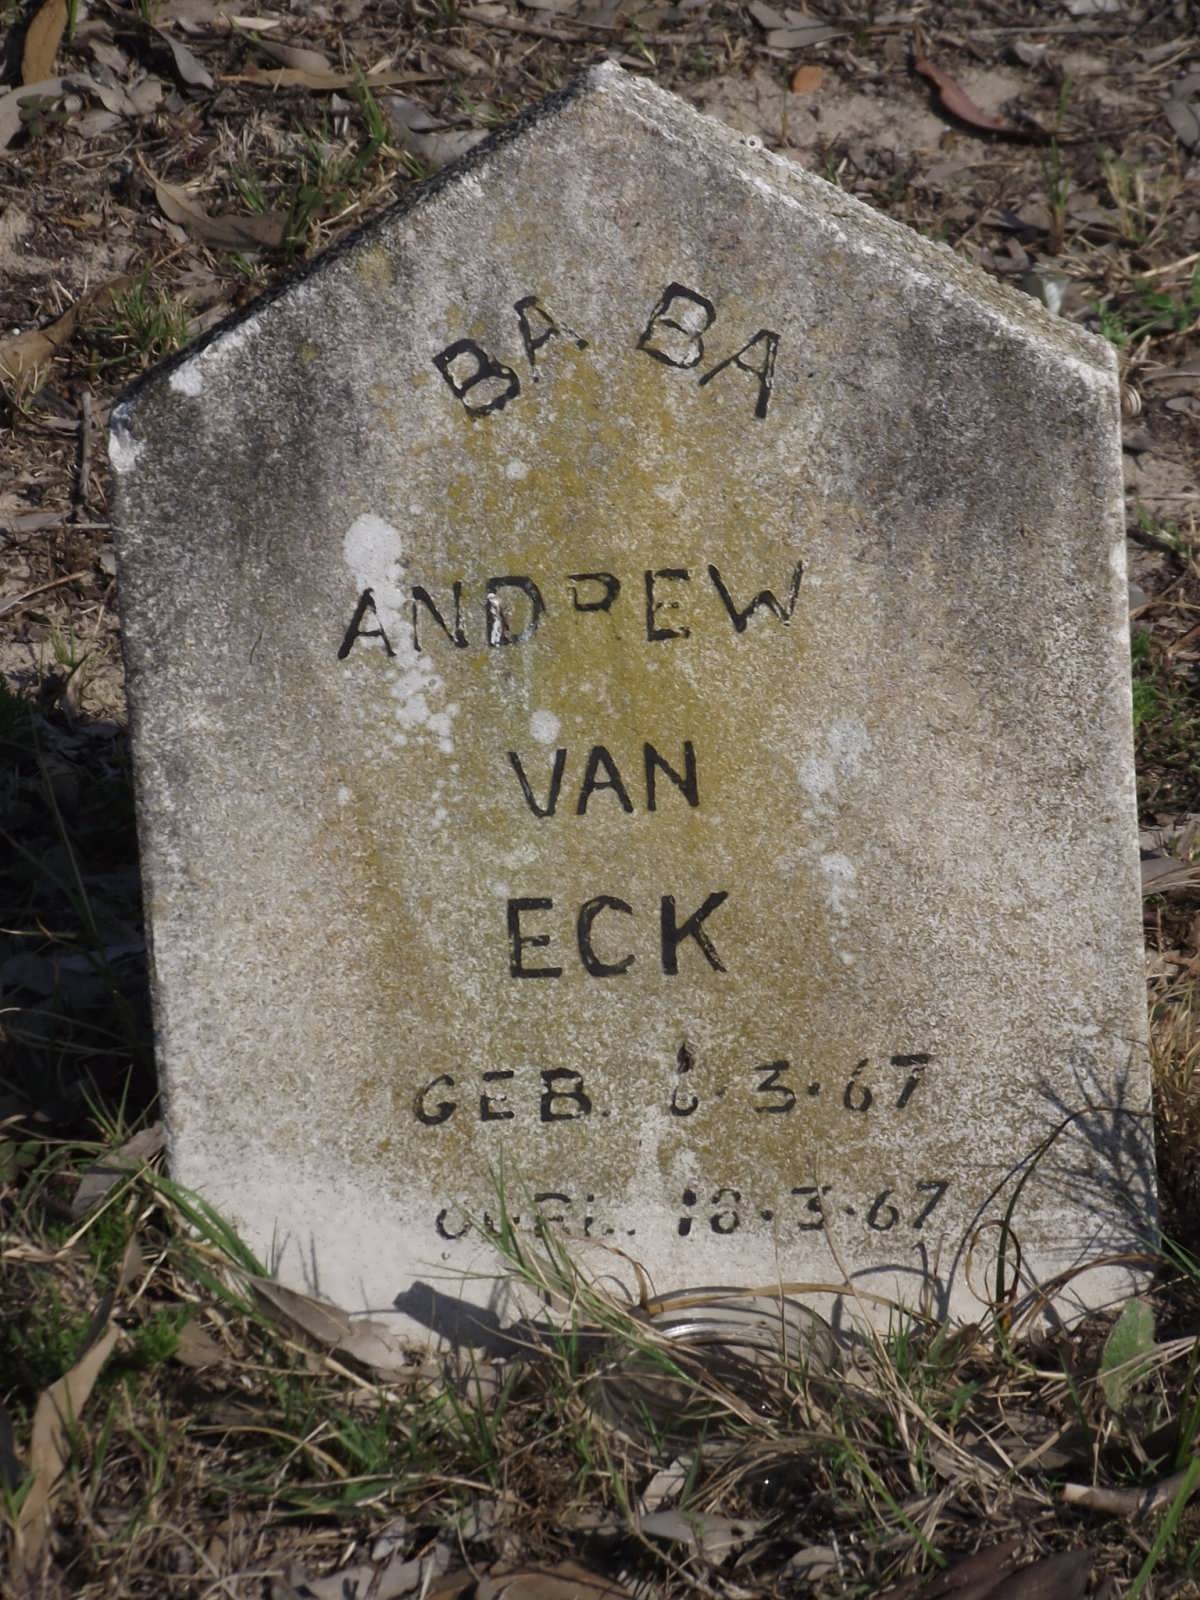 ECK Andrew C., van 1967-1967